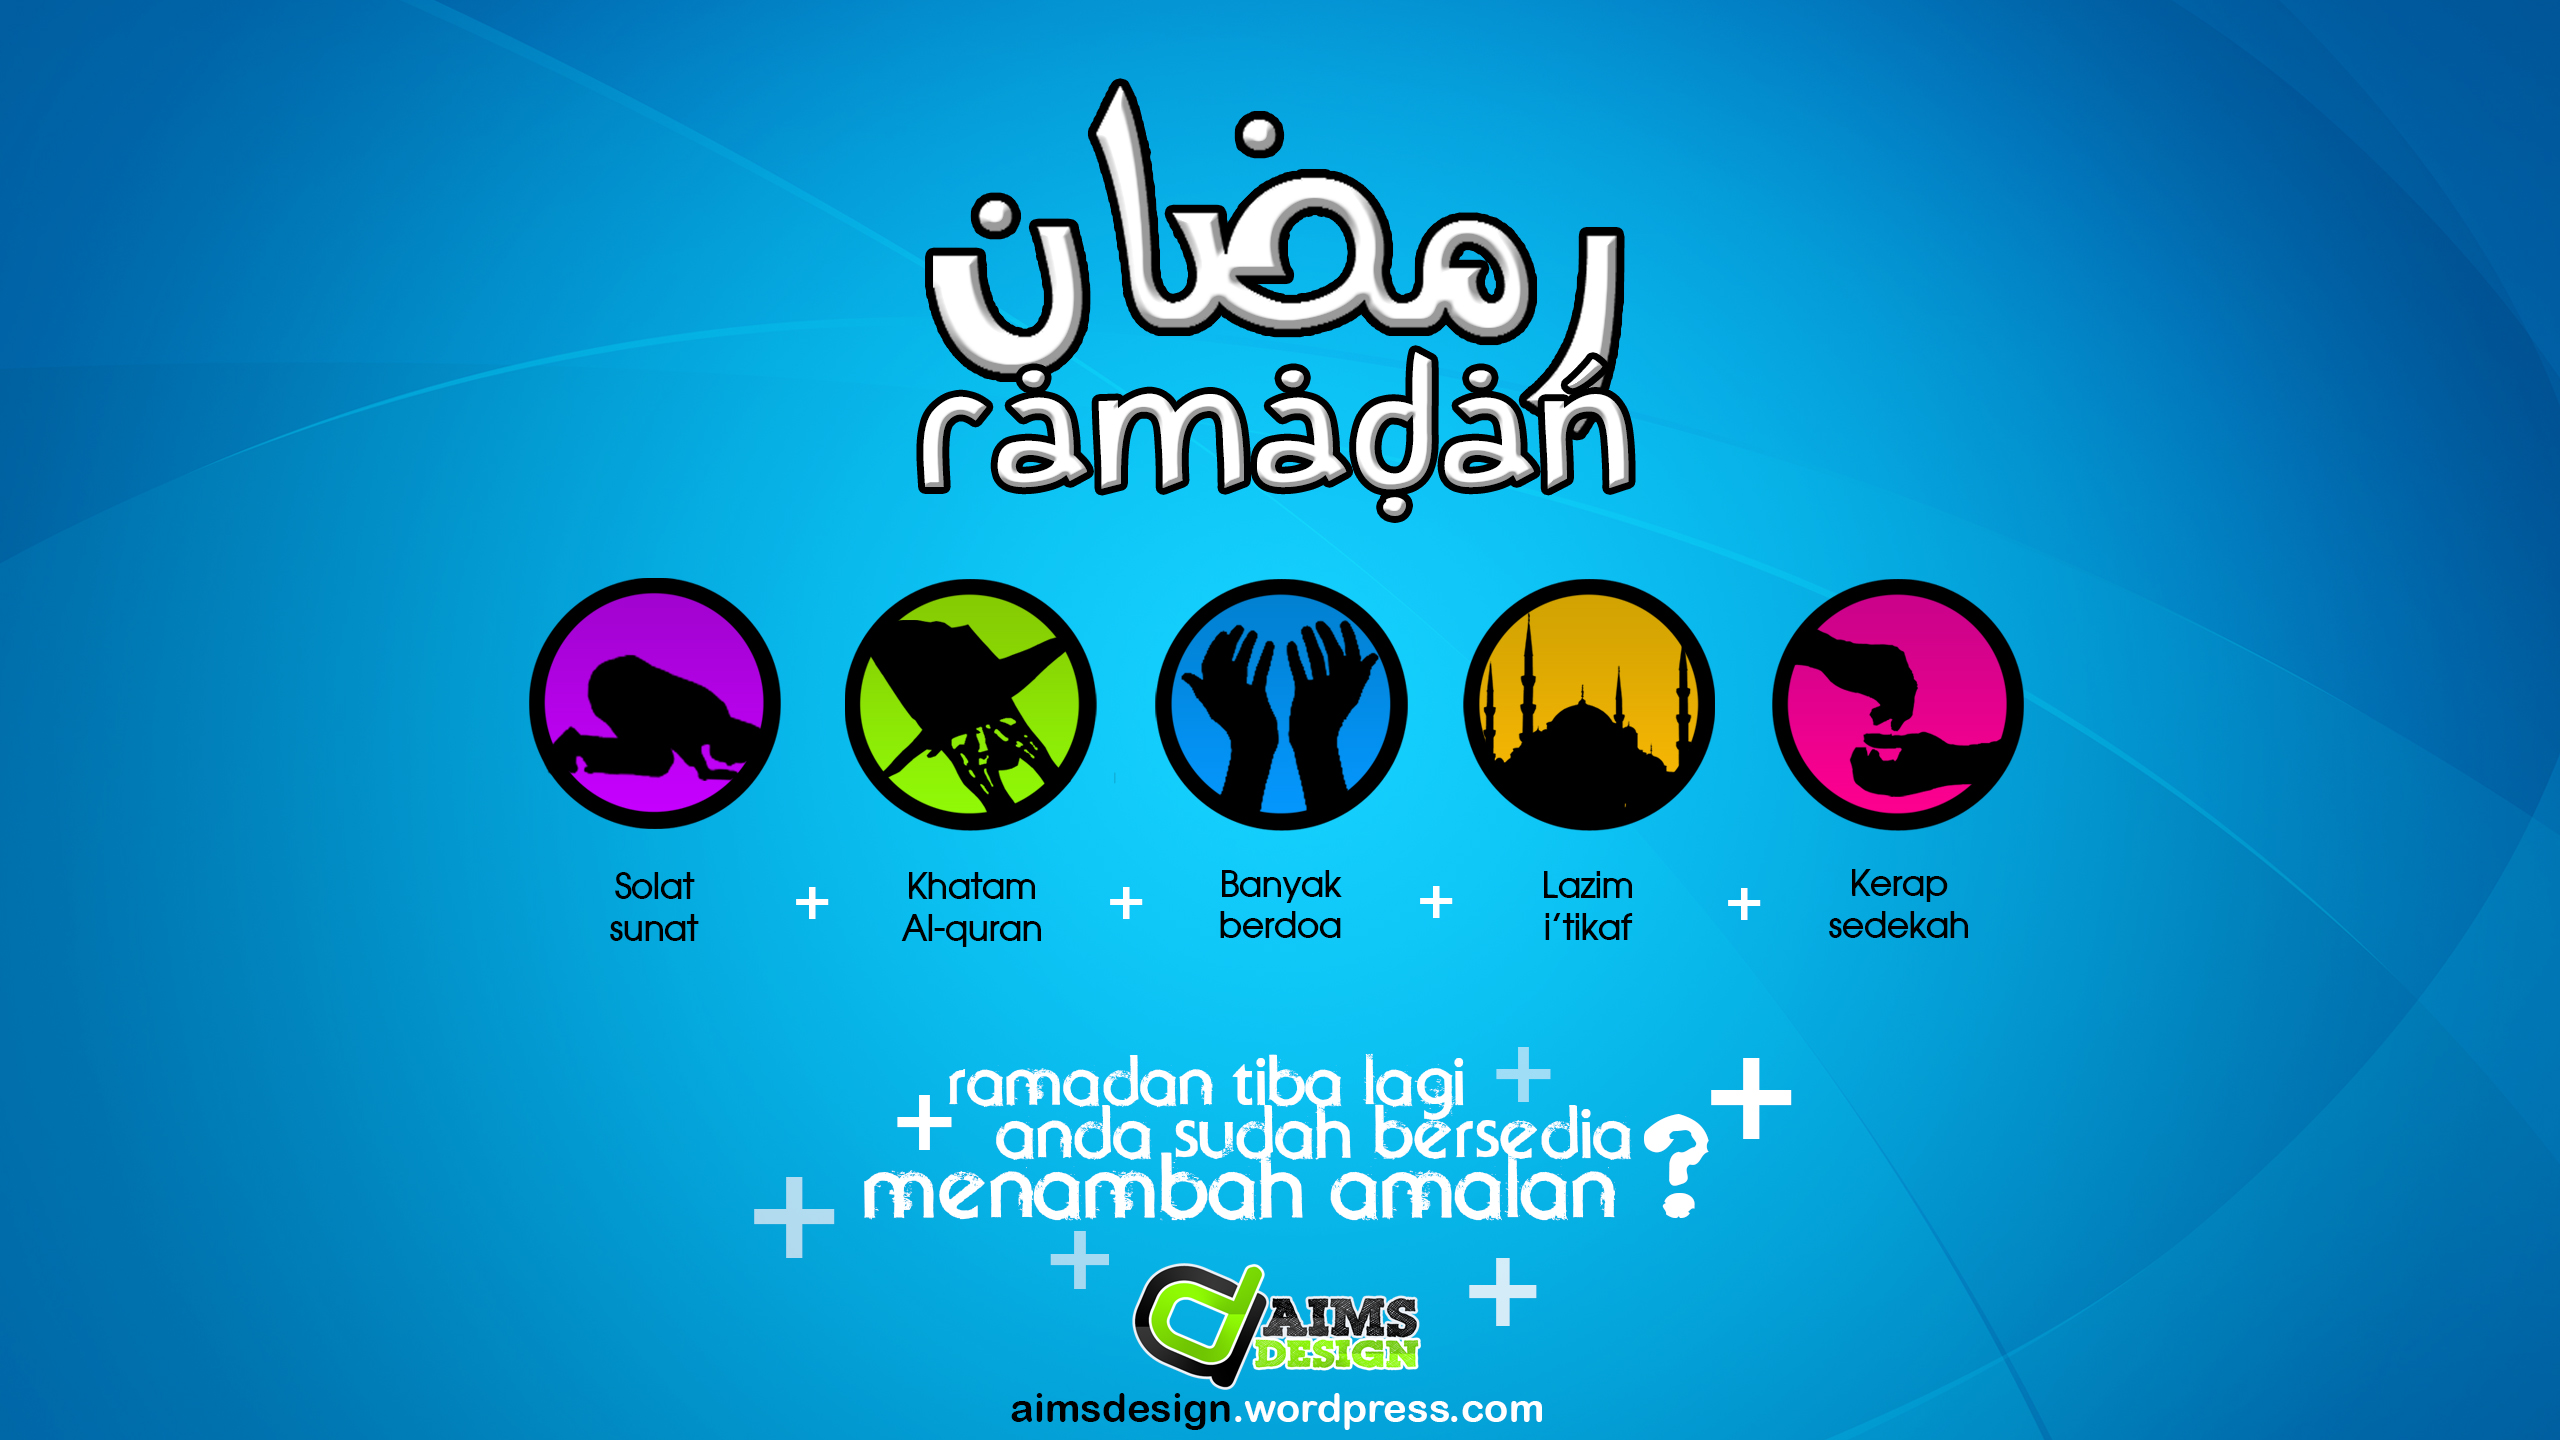 Contoh Gambar Poster Bulan Ramadhan - Sepcont